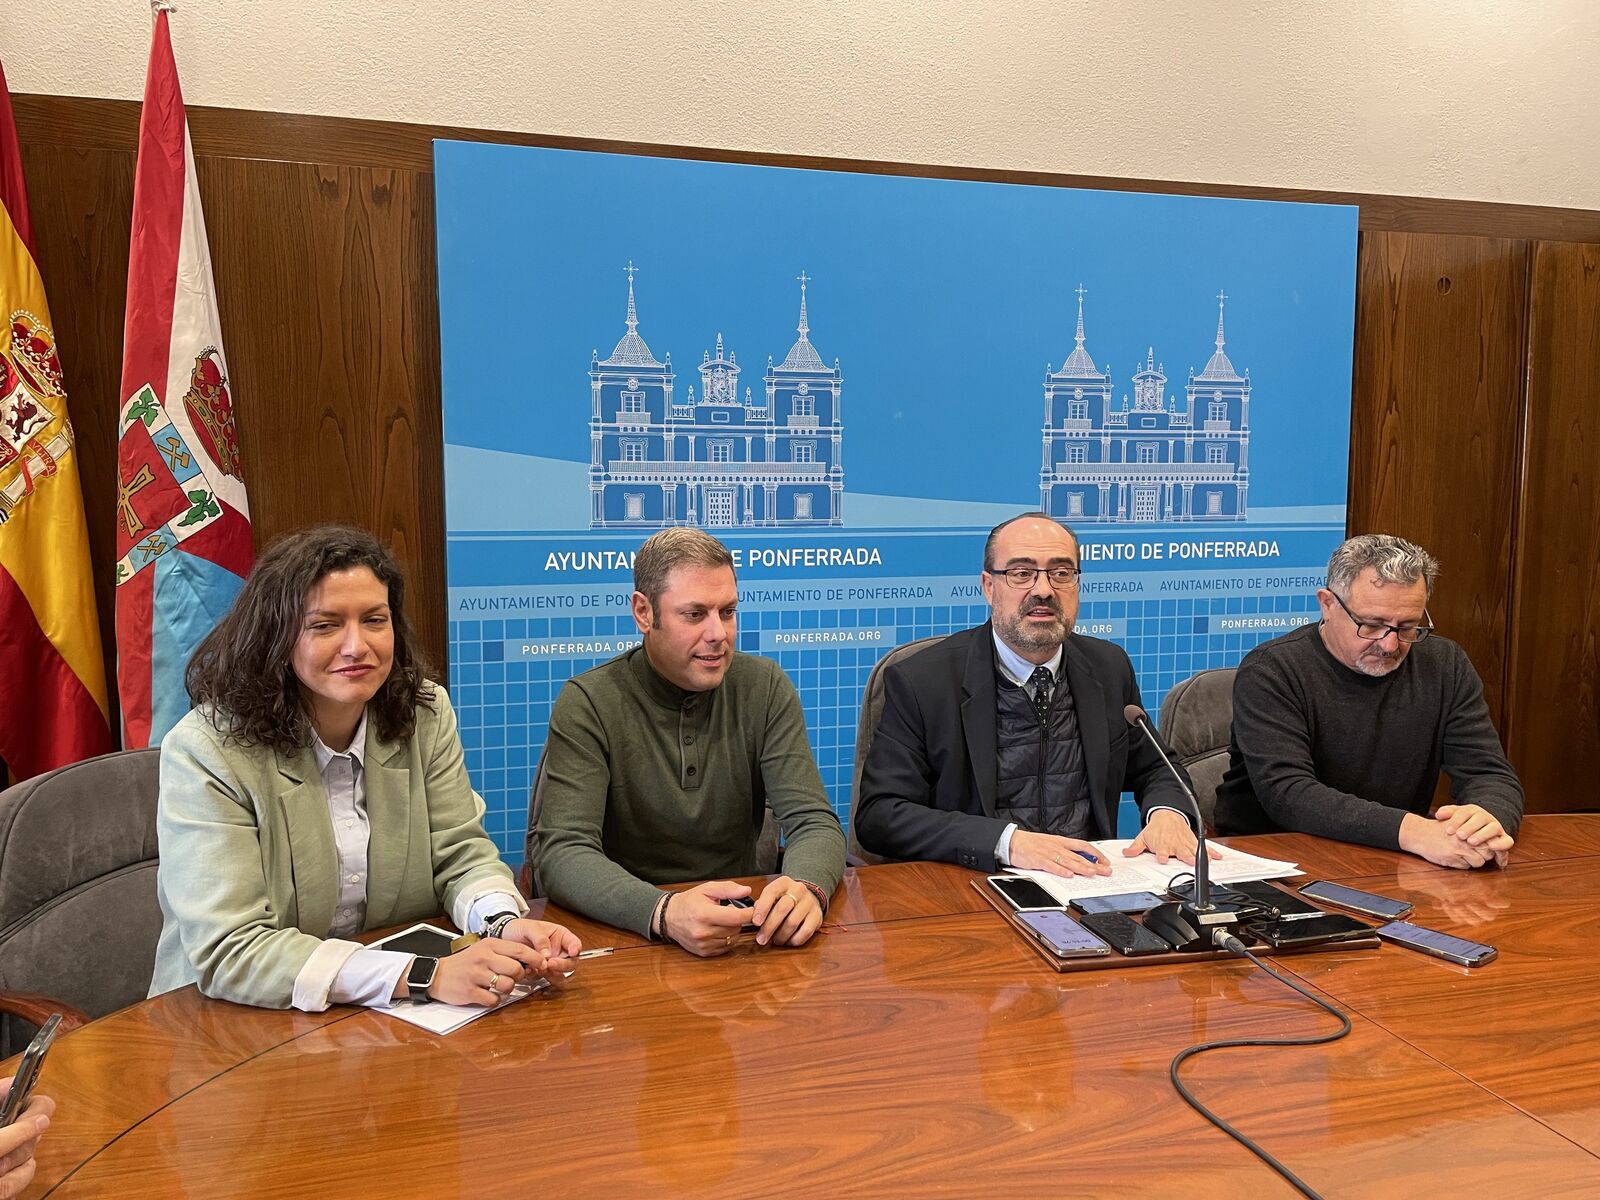 Lidia Coca, Iván Alonso, Marco Morala y Carlos Fernández anunciando el acuerdo con la DGT. | Javier Fernández